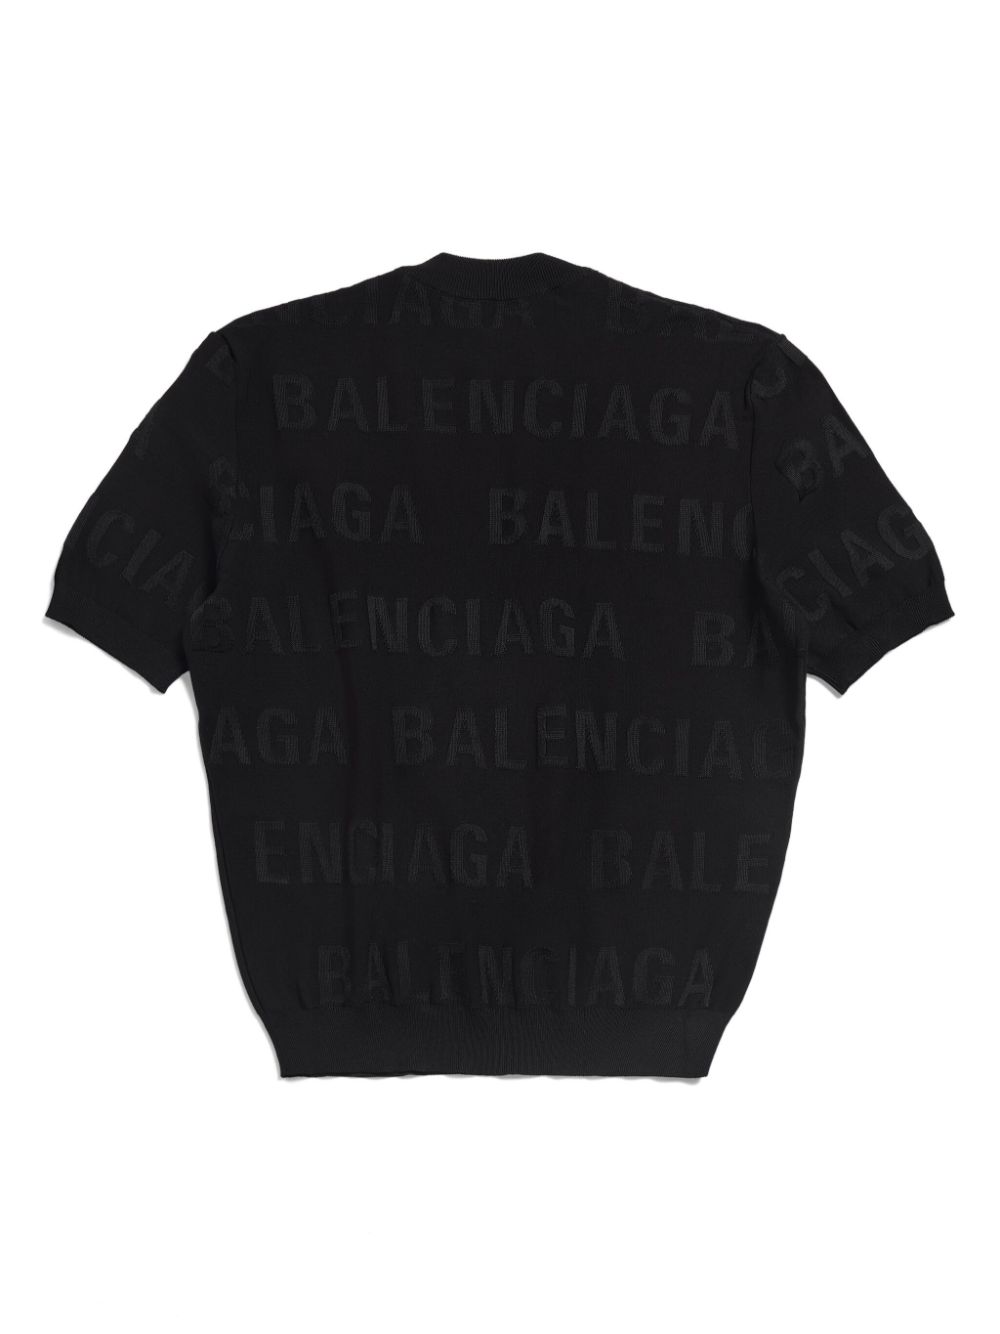 Balenciaga BALENCIAGA- Allover Logo Top